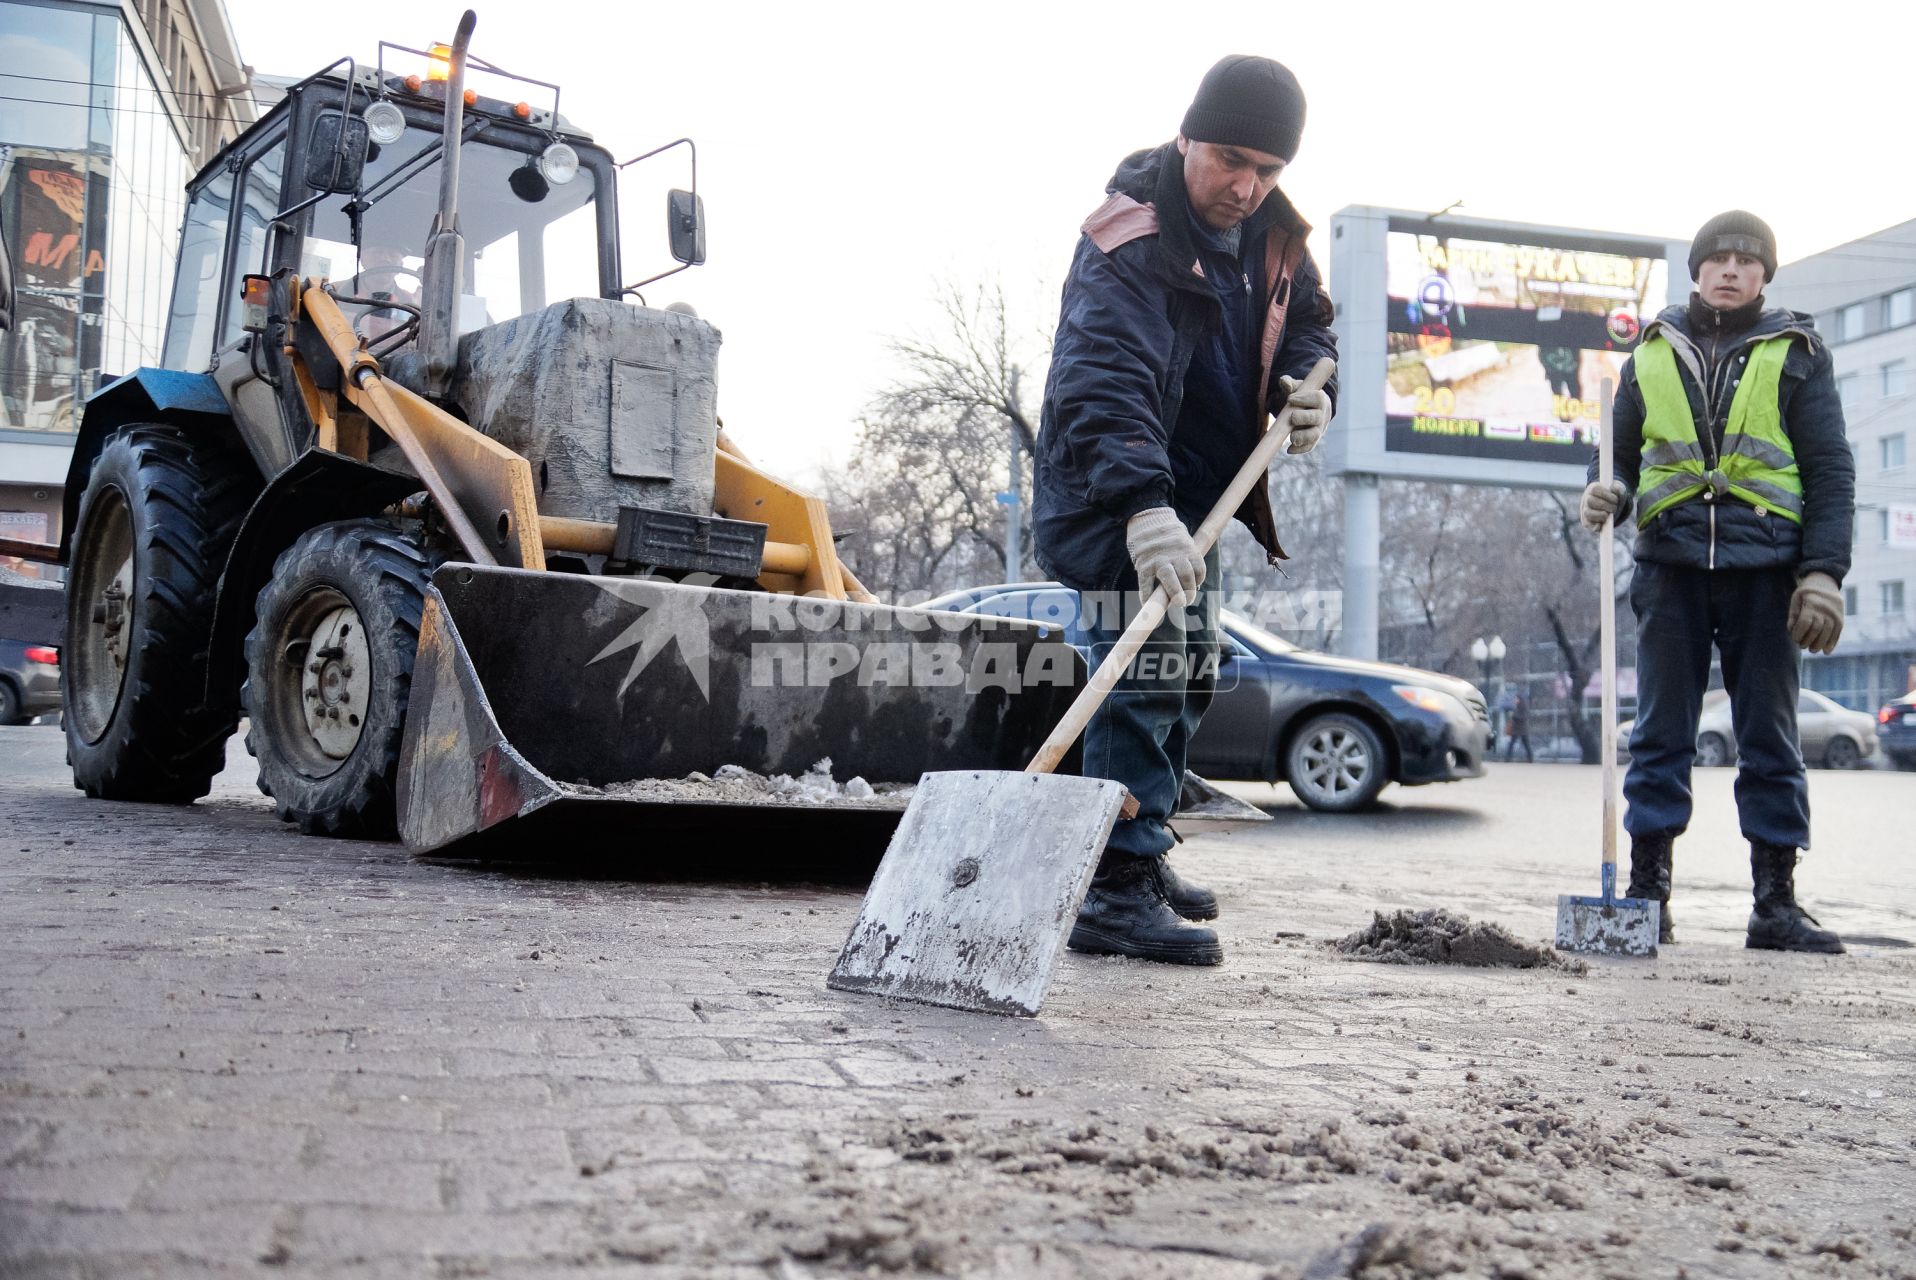 Екатеринбург. Дворники с помощью лопат и трактора убирают снег с улицы.